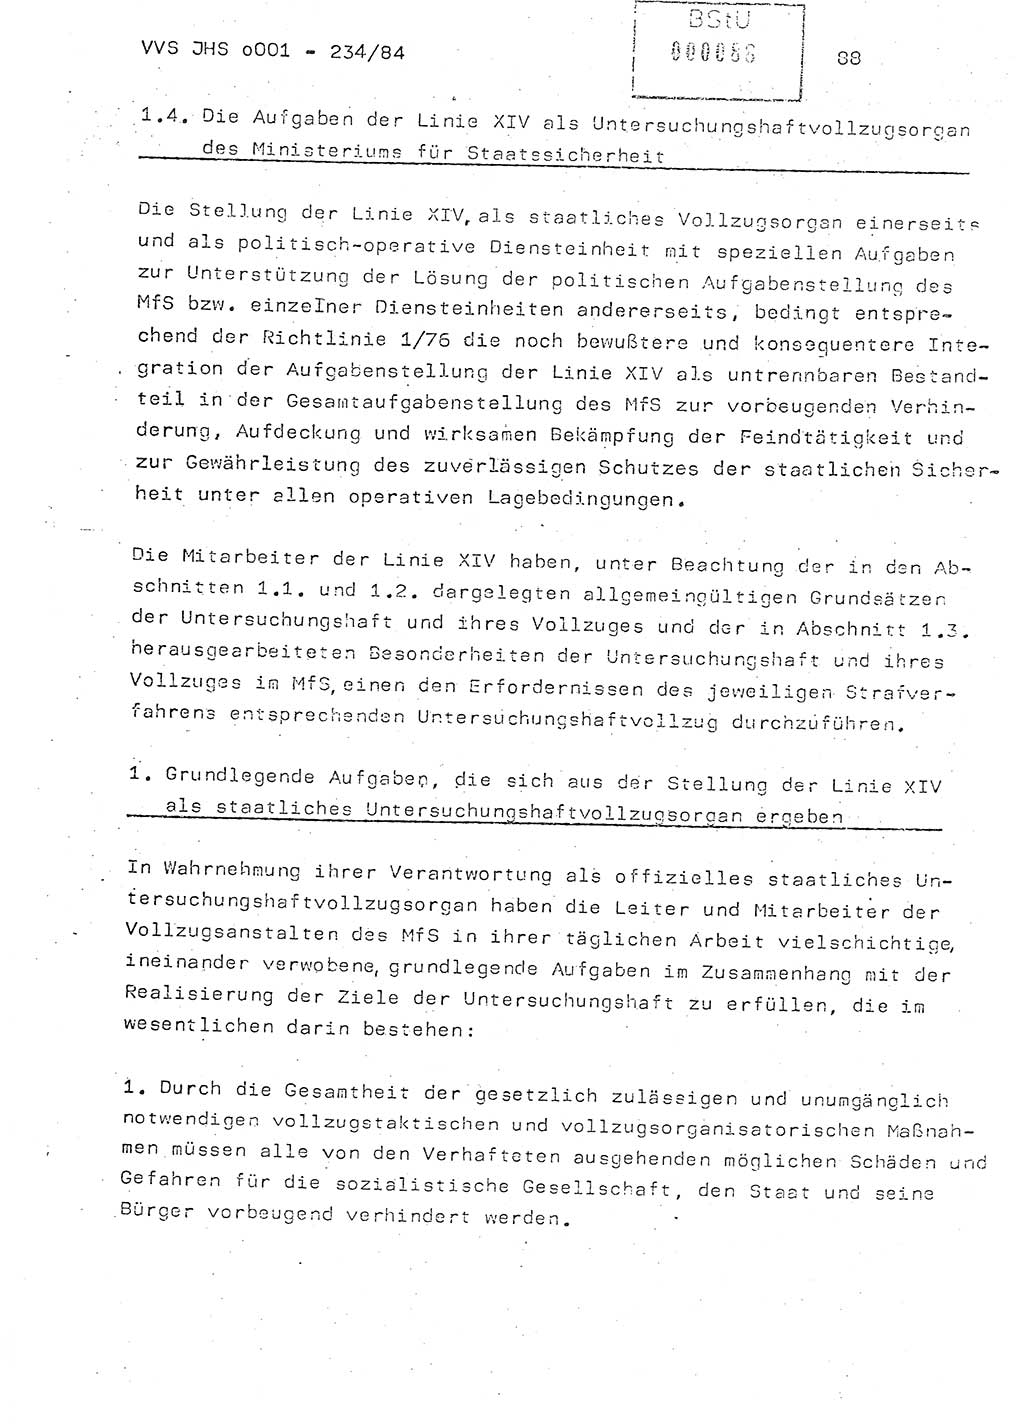 Dissertation Oberst Siegfried Rataizick (Abt. ⅩⅣ), Oberstleutnant Volkmar Heinz (Abt. ⅩⅣ), Oberstleutnant Werner Stein (HA Ⅸ), Hauptmann Heinz Conrad (JHS), Ministerium für Staatssicherheit (MfS) [Deutsche Demokratische Republik (DDR)], Juristische Hochschule (JHS), Vertrauliche Verschlußsache (VVS) o001-234/84, Potsdam 1984, Seite 88 (Diss. MfS DDR JHS VVS o001-234/84 1984, S. 88)